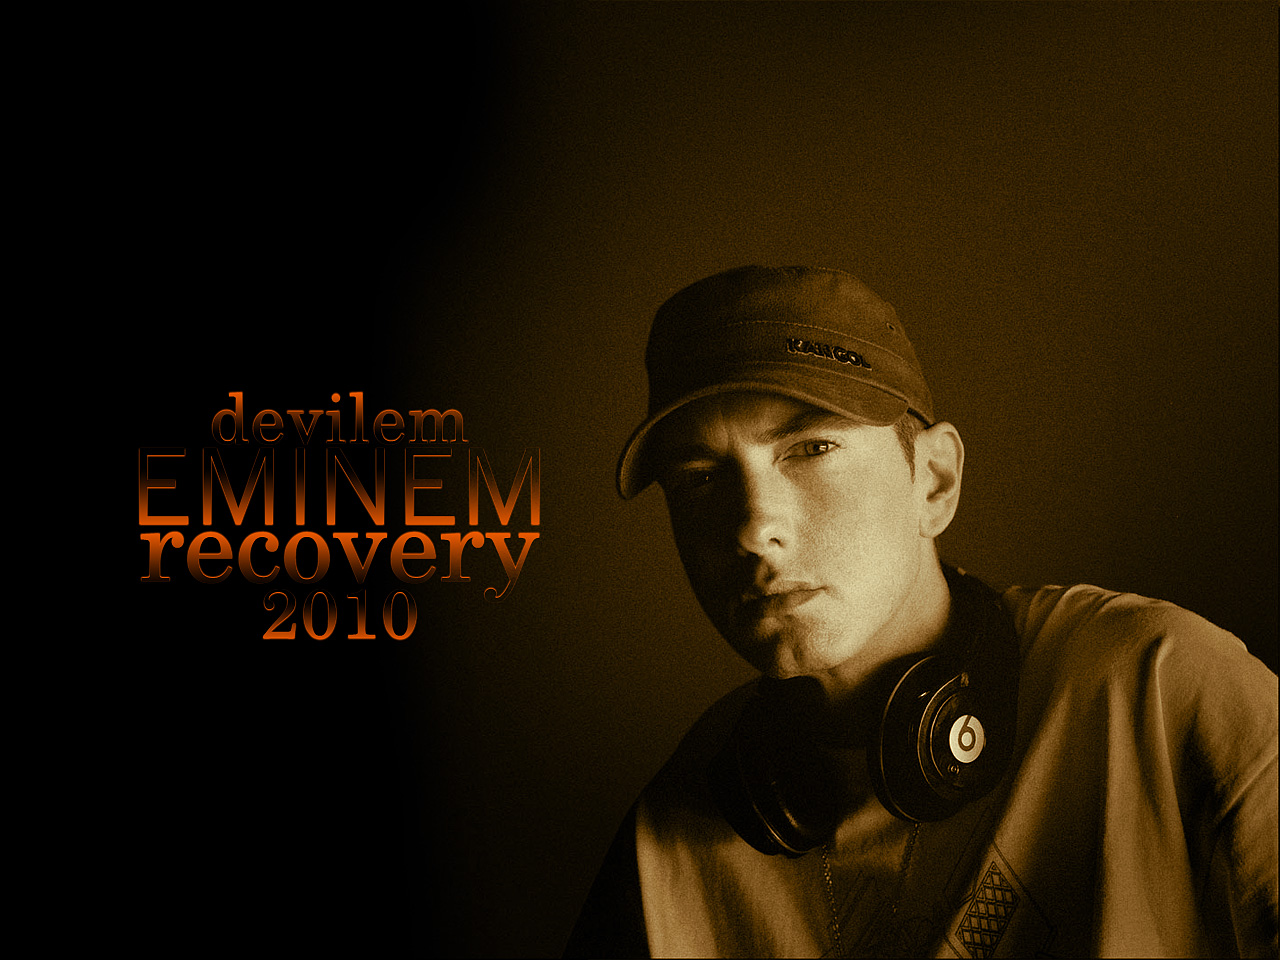 http://1.bp.blogspot.com/-epUOQ9xhYOQ/Tbne1jBmVyI/AAAAAAAAAFo/6-3jMizwwAA/s1600/Eminem-Recovery-wallpaper.jpg